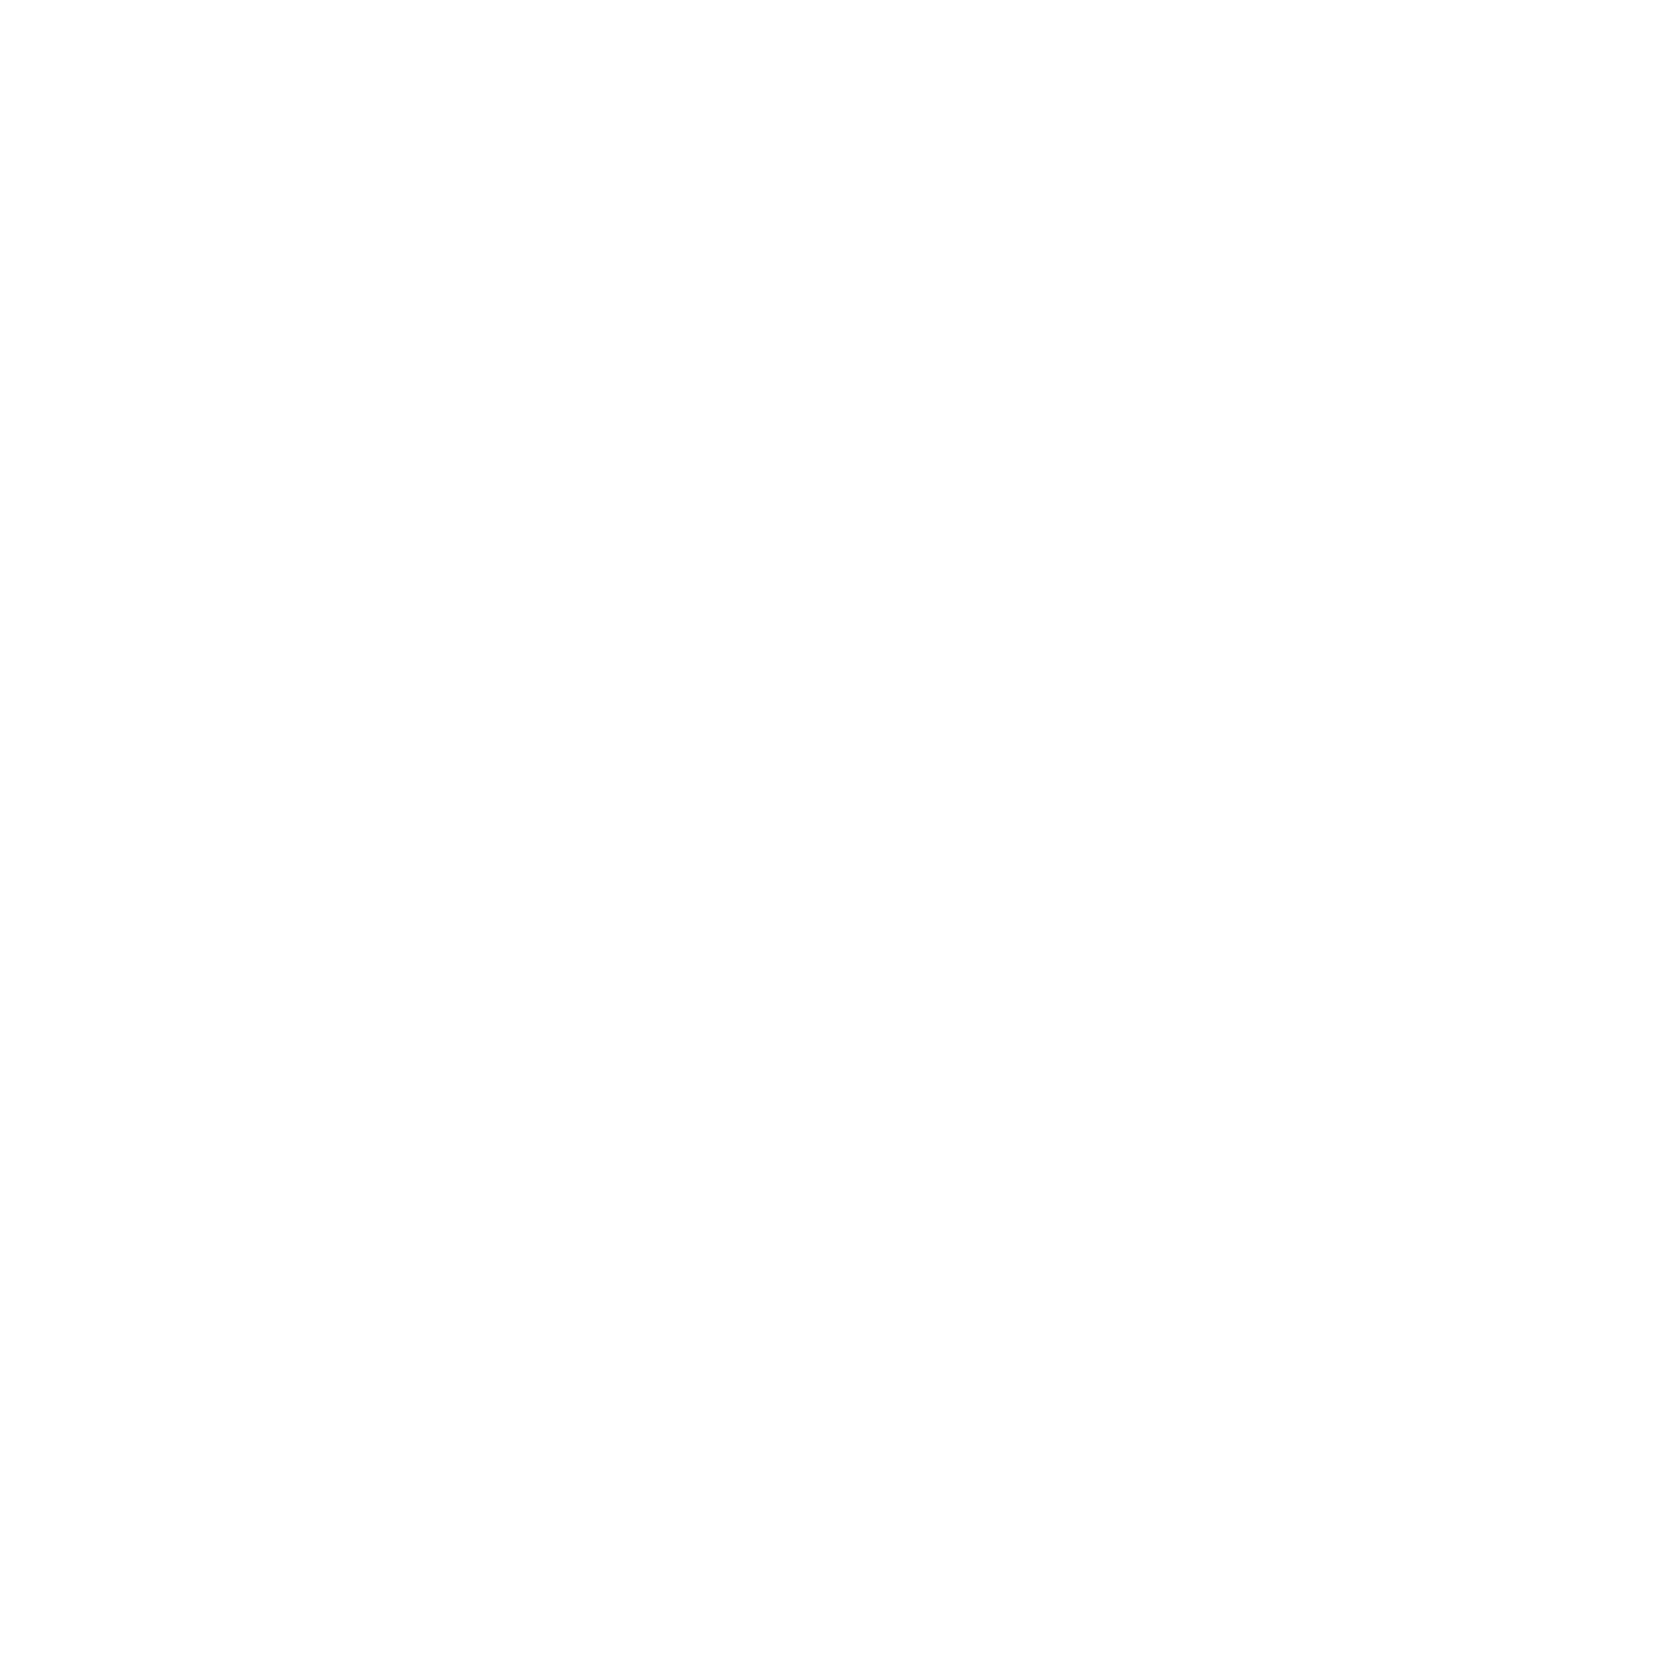 Светильник алюминиевый Flexy SVET 30: размер, вид, применение, способ монтажа в Беларуси (РБ)